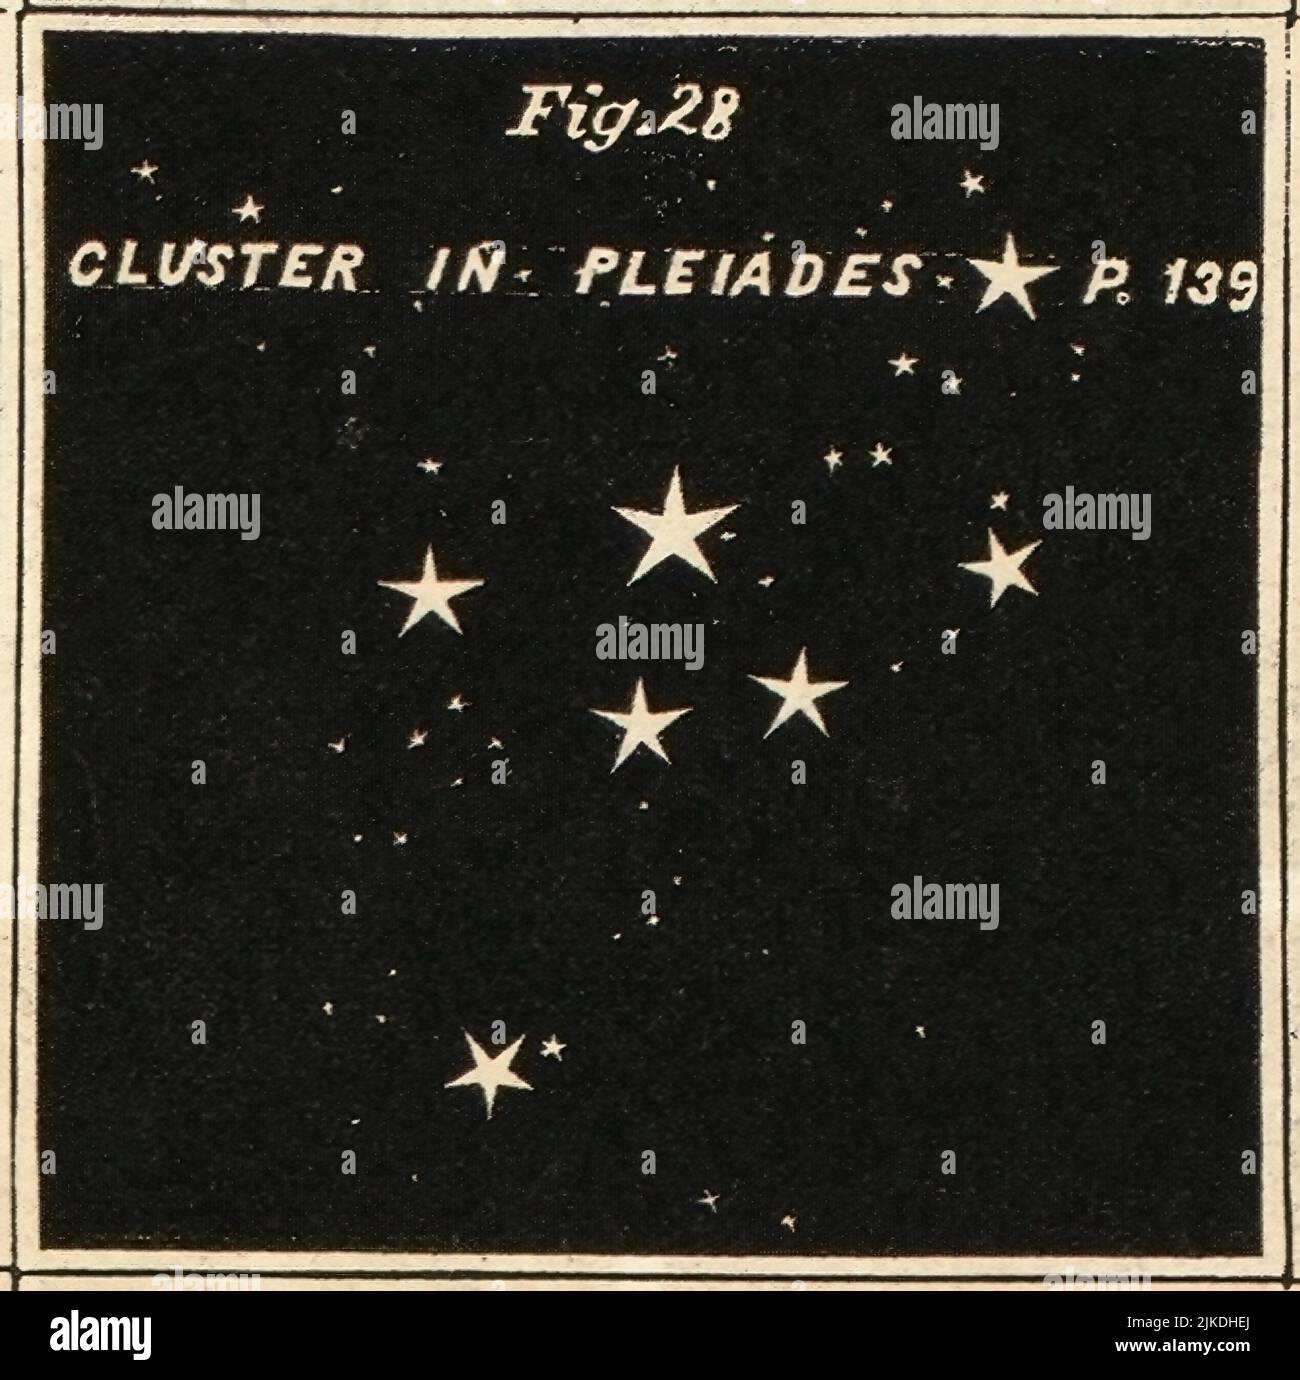 Cluster in Pleiades - Atlante progettato per illustrare la Geografia del cielo di Burritt - Burritt, Elia H. Double stars and clusters. Cluster, Foto Stock